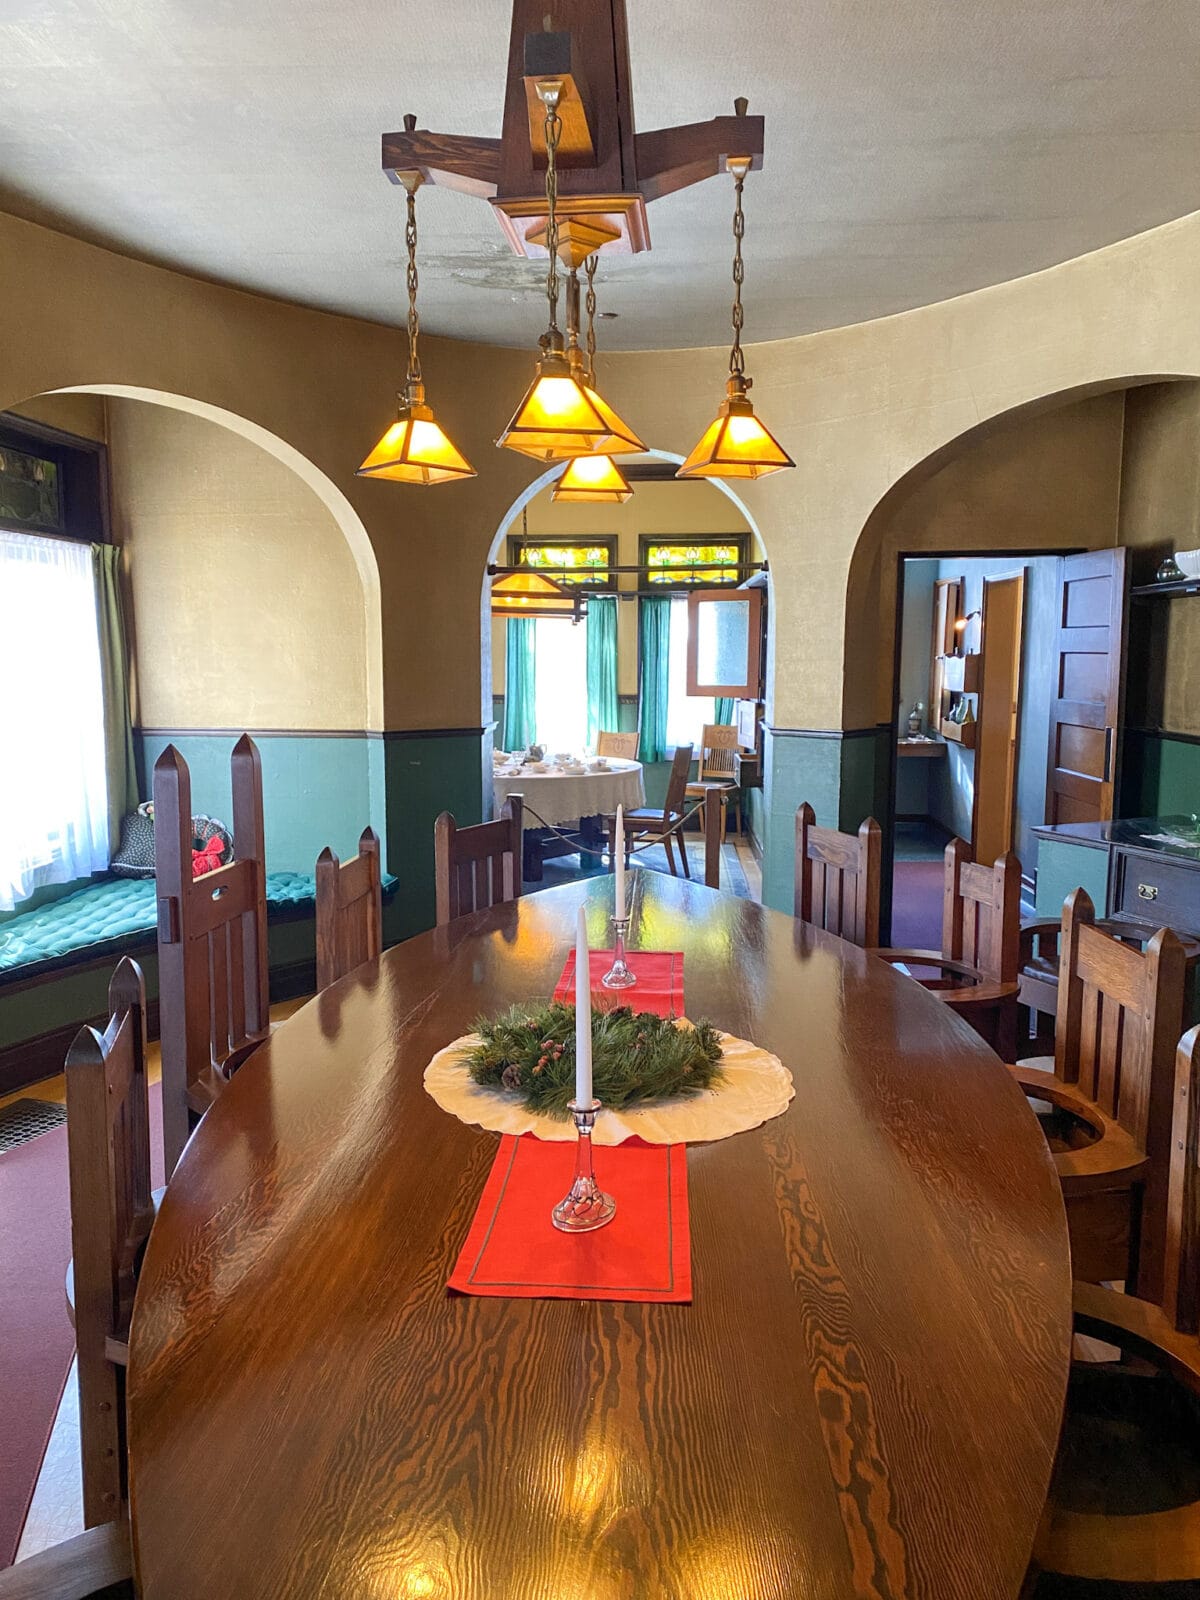 Dining room at Riordan Mansion